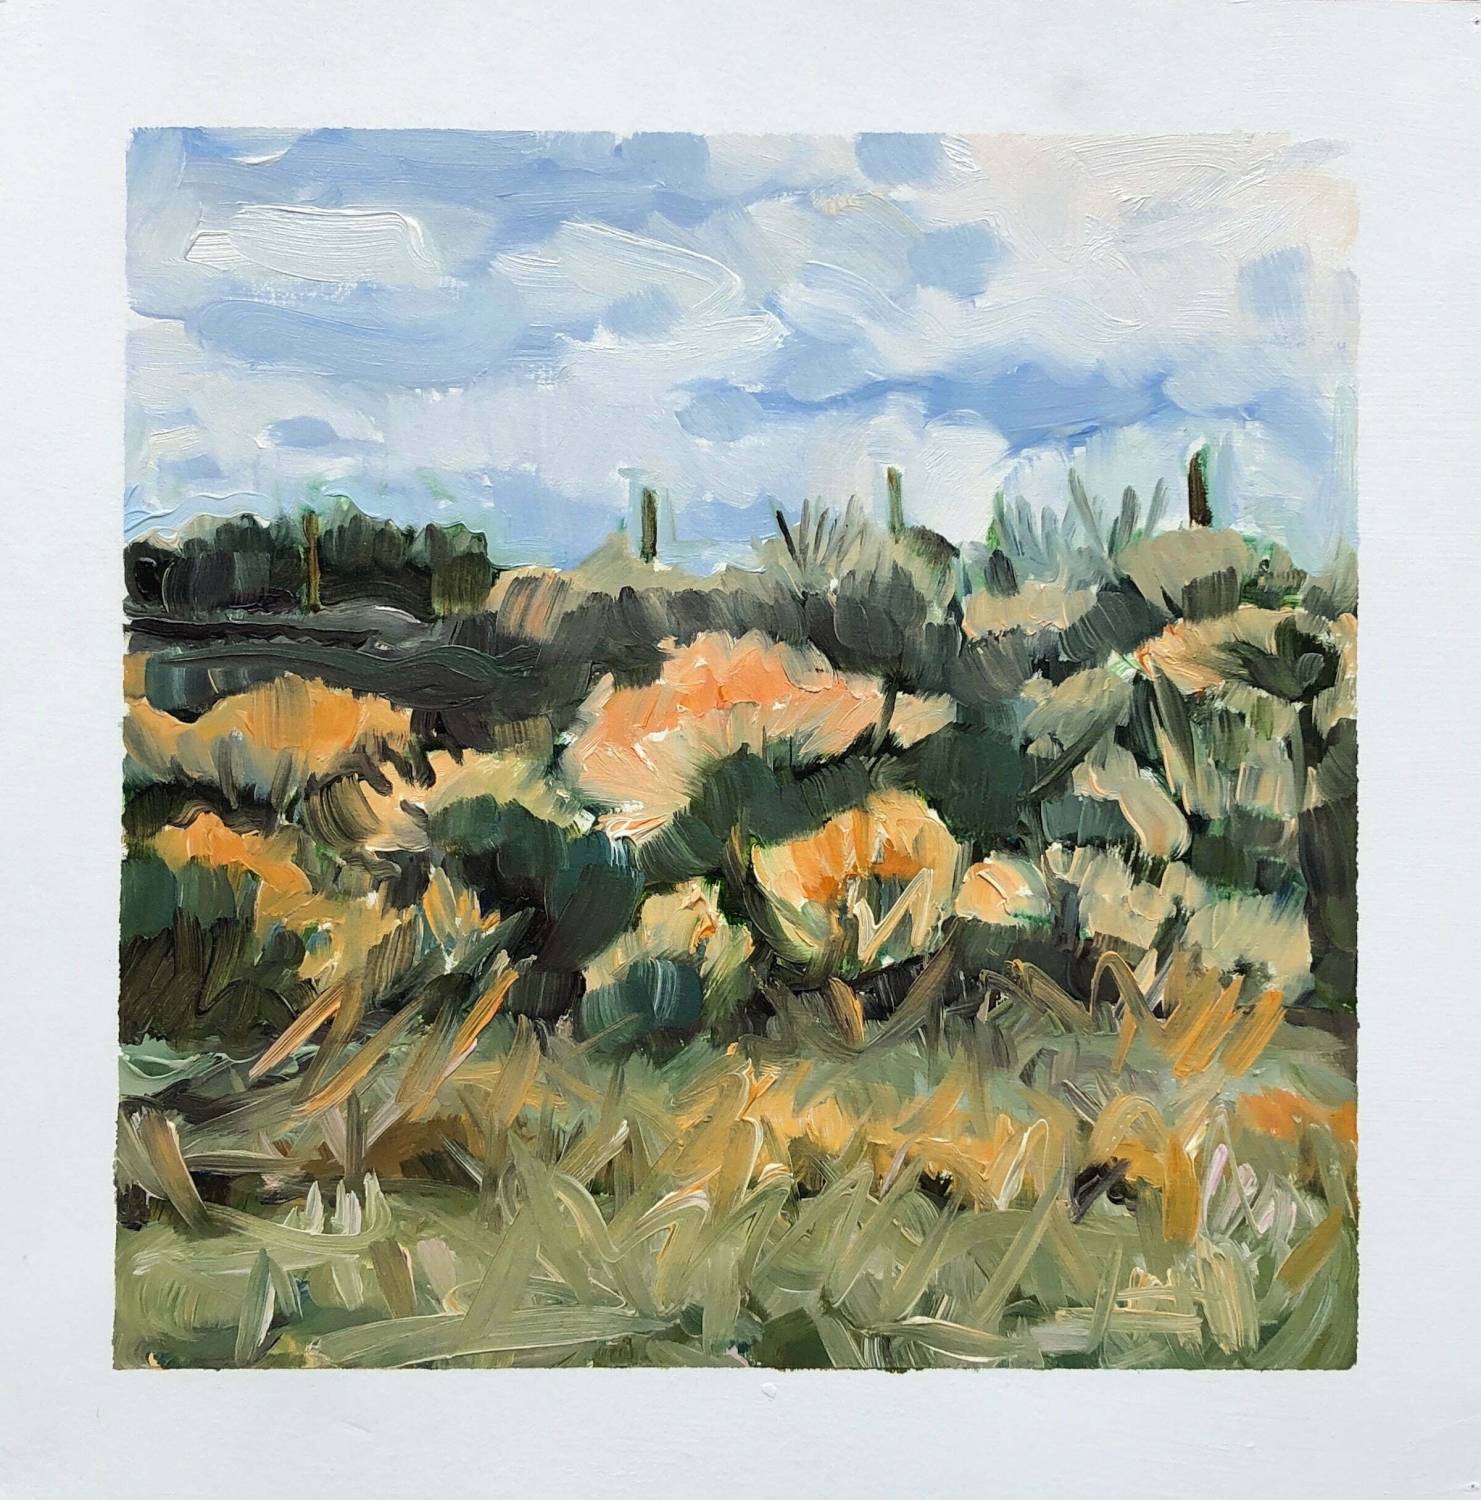 edie-marshall-terrain-808-modern-landscape-art-prairie-painting-online-gallery